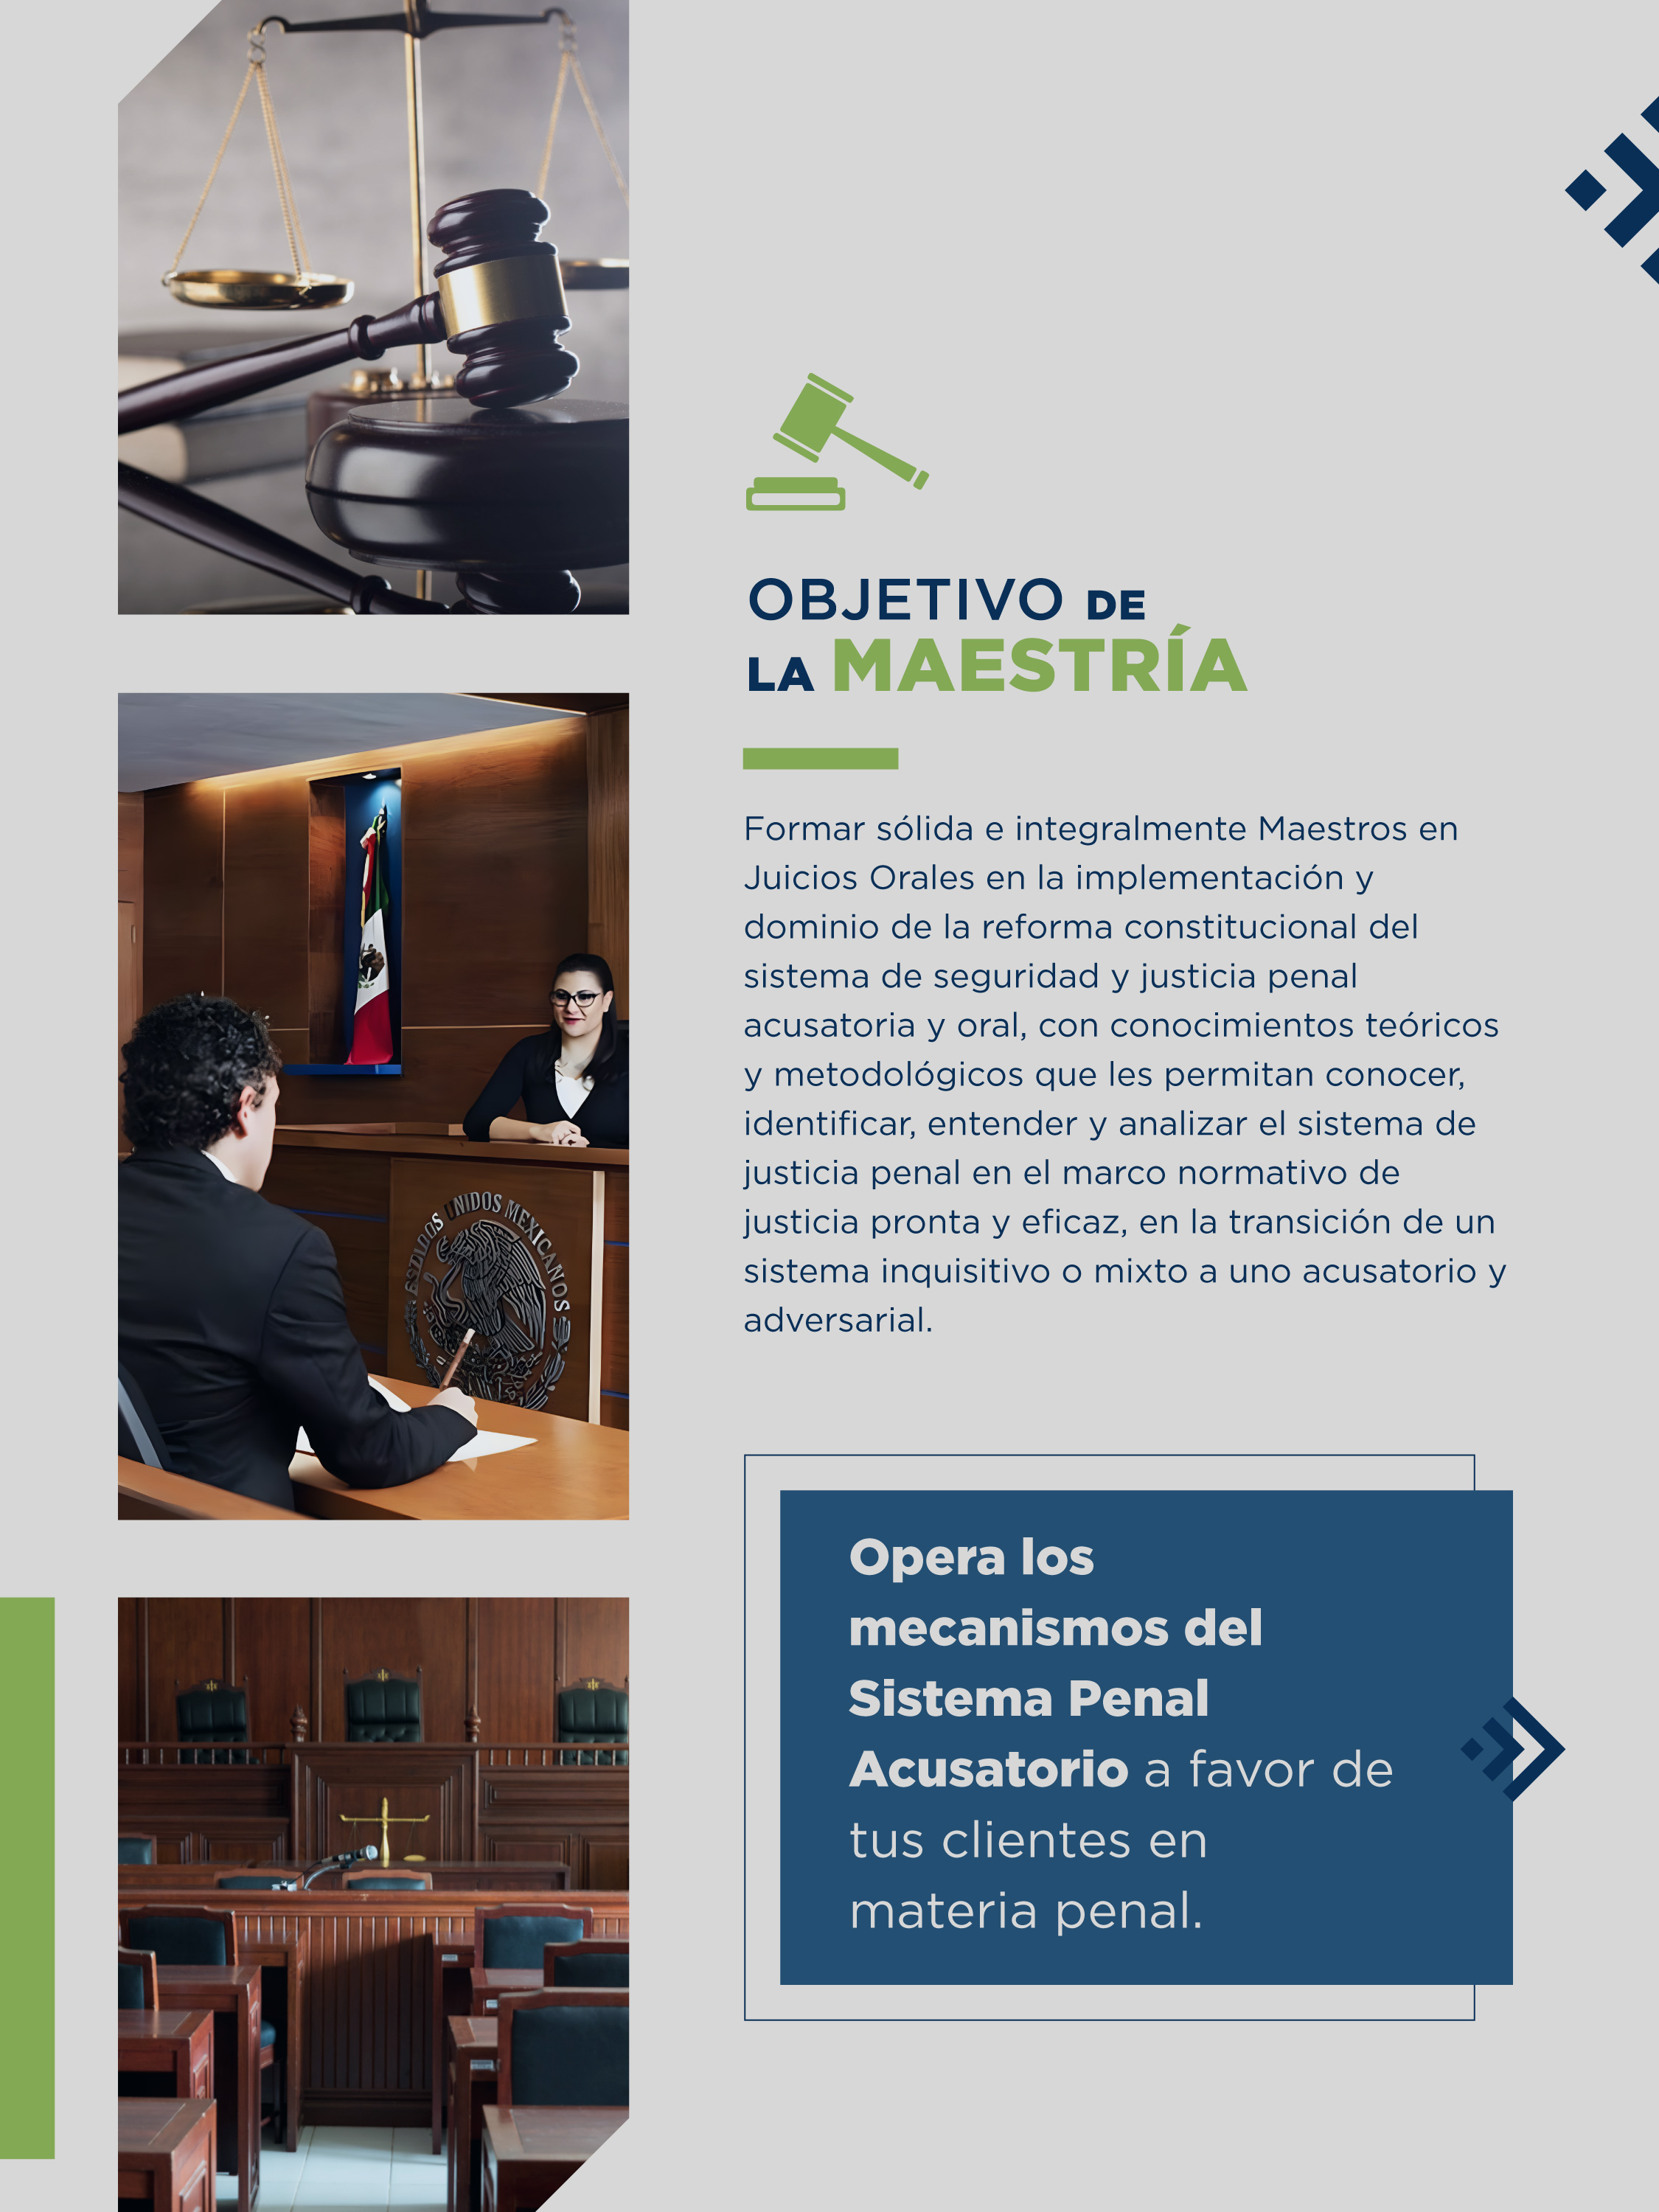 ¿Te gustaría conocer las habilidades y actitudes que adquirirás a lo largo del programa de la Maestria en Juicios Orales de la Universidad Cuauhtémoc?